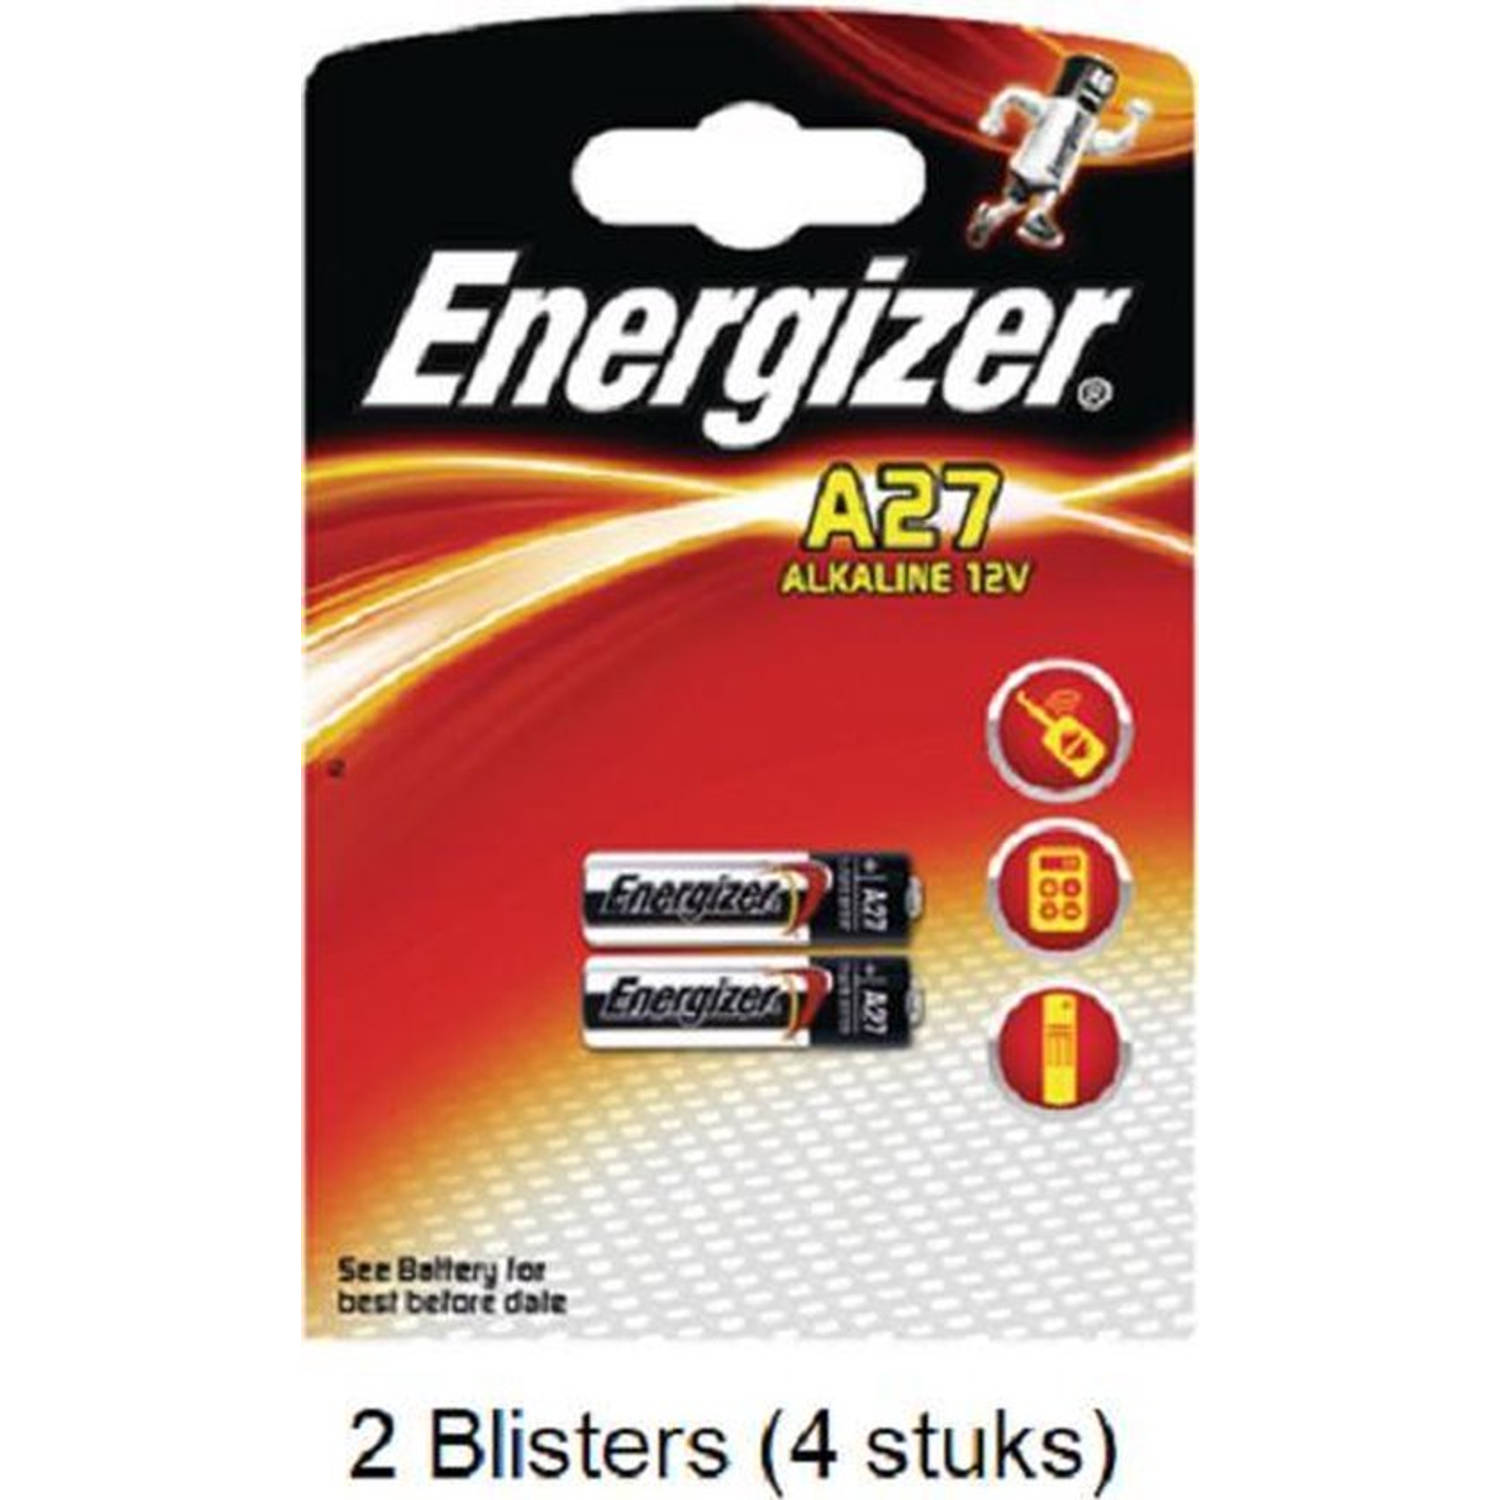 4 Stuks (2 Blisters A 2 Stuks) Energizer Alkaline Lr27-A27 12v